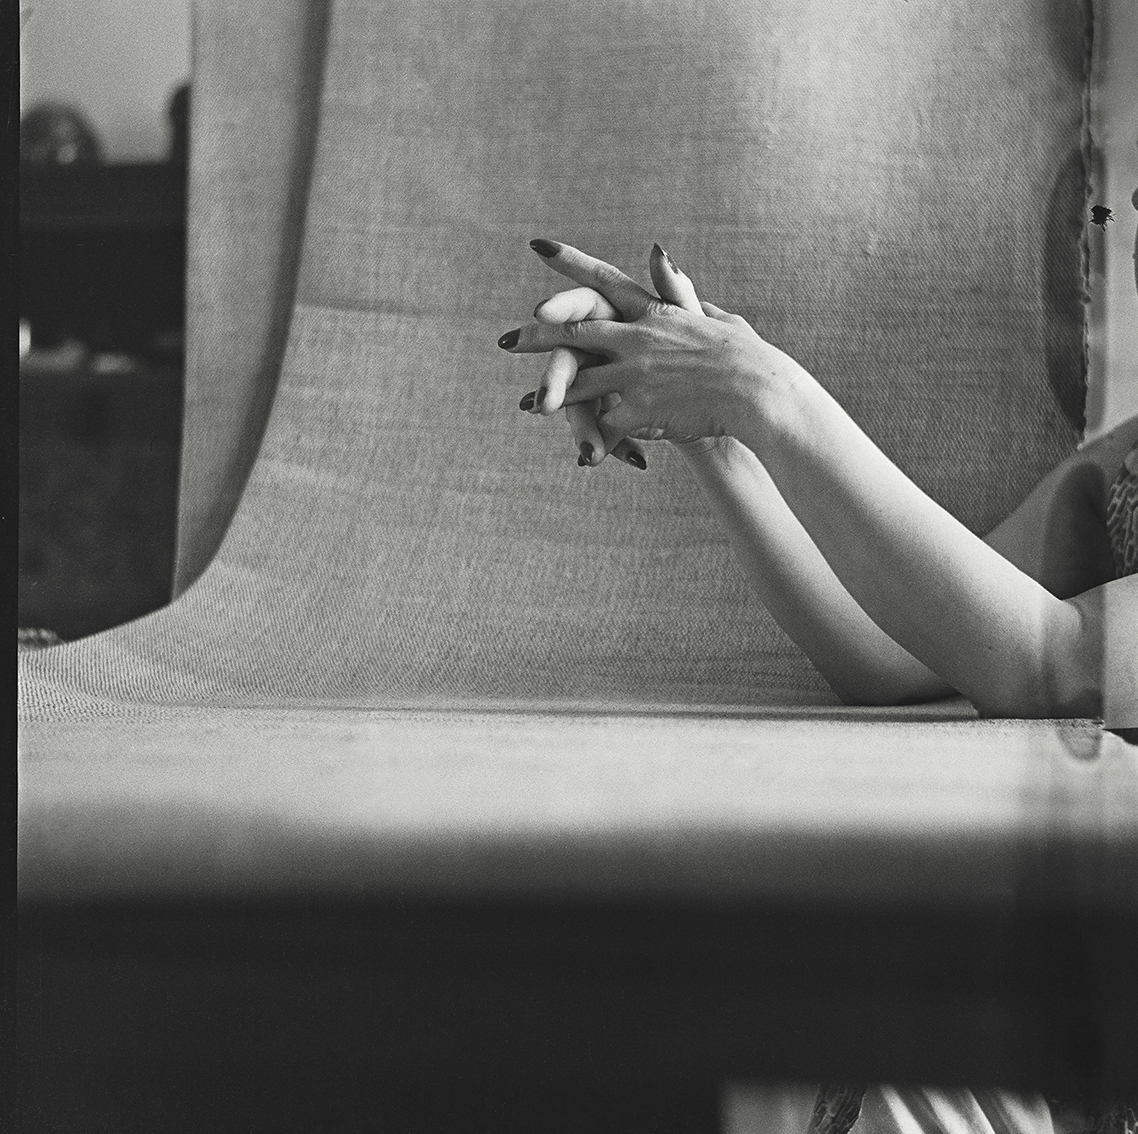 Colette Baltzakis (1926-2014) :: Hands # 4, Paris, 1952. | src Colette Baltzakis Collection at eye-eye